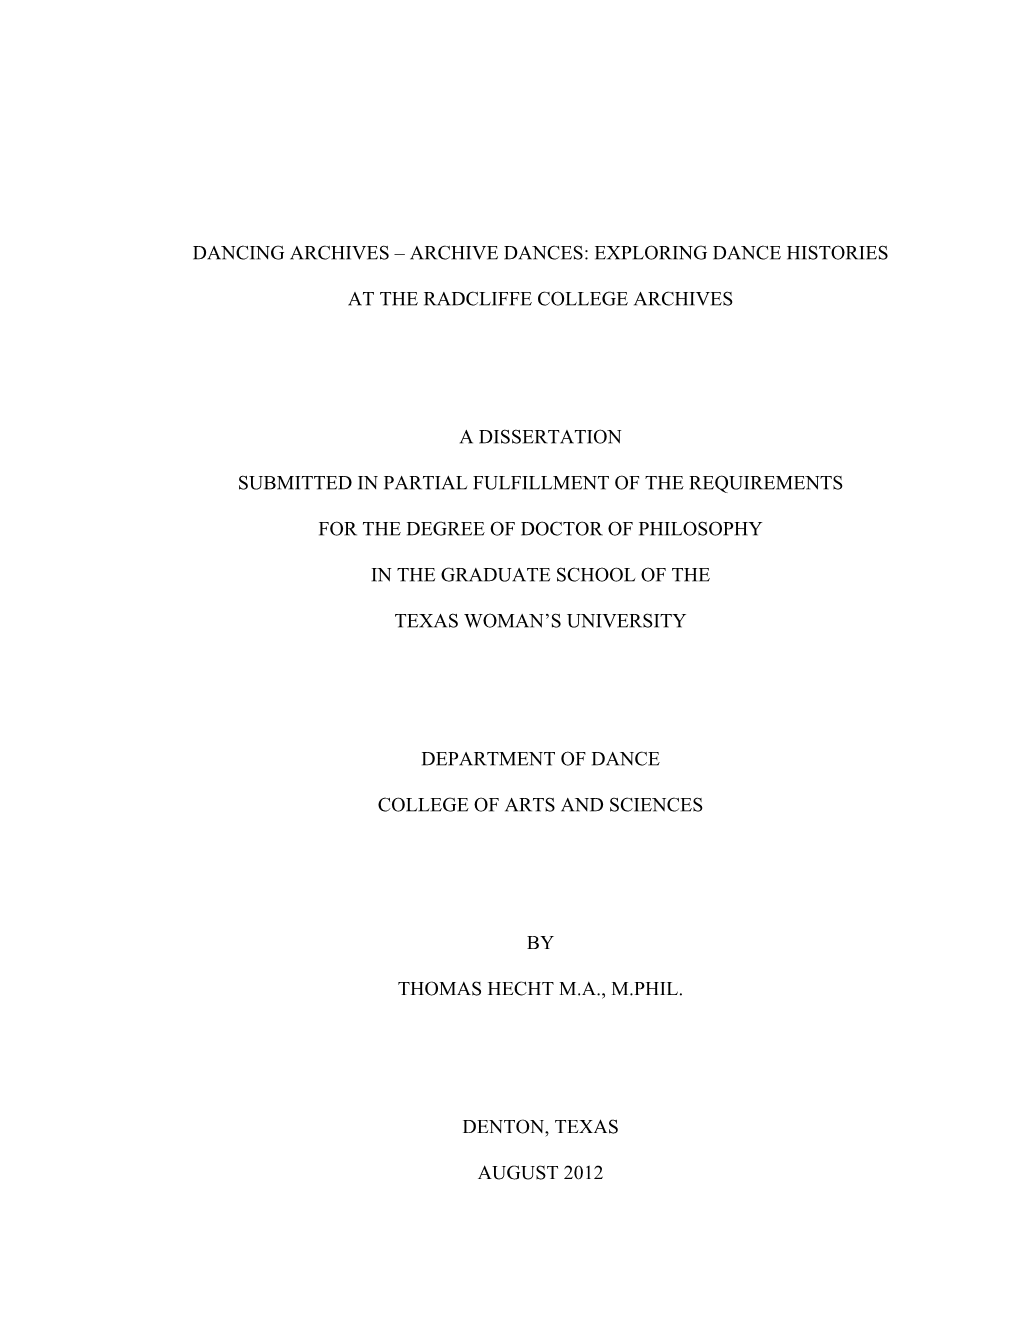 Hecht Dissertation Final Copy June 27, 2012